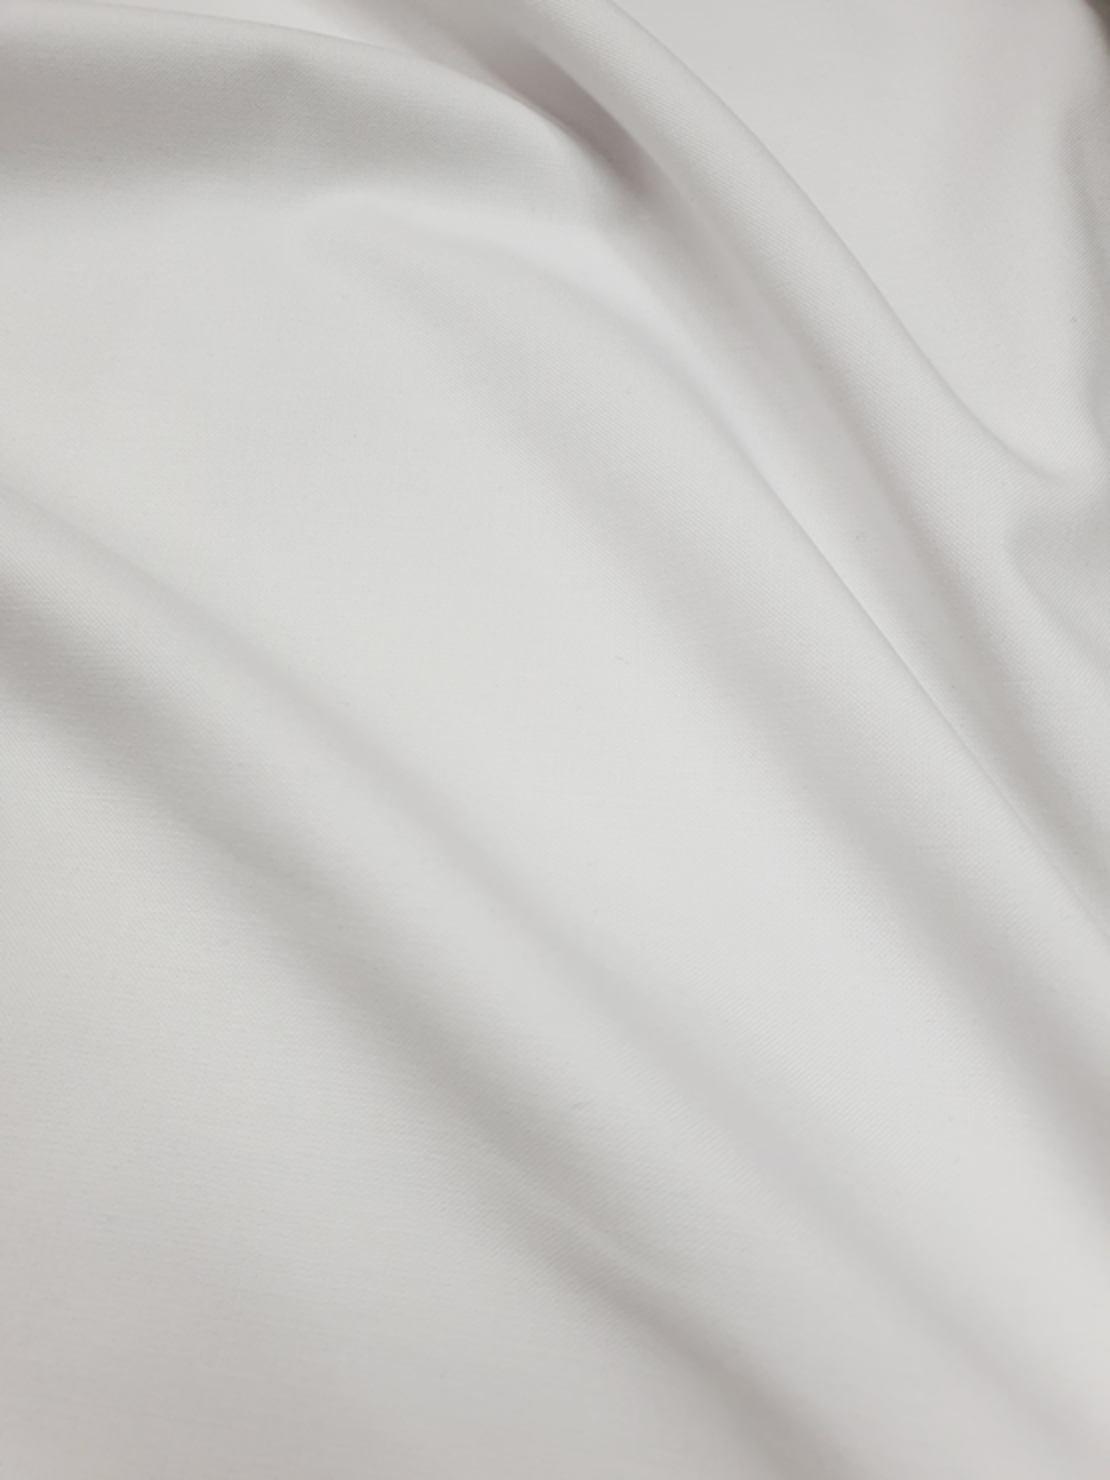 אריג פולי ויסקוזה זארה צבע לבן 